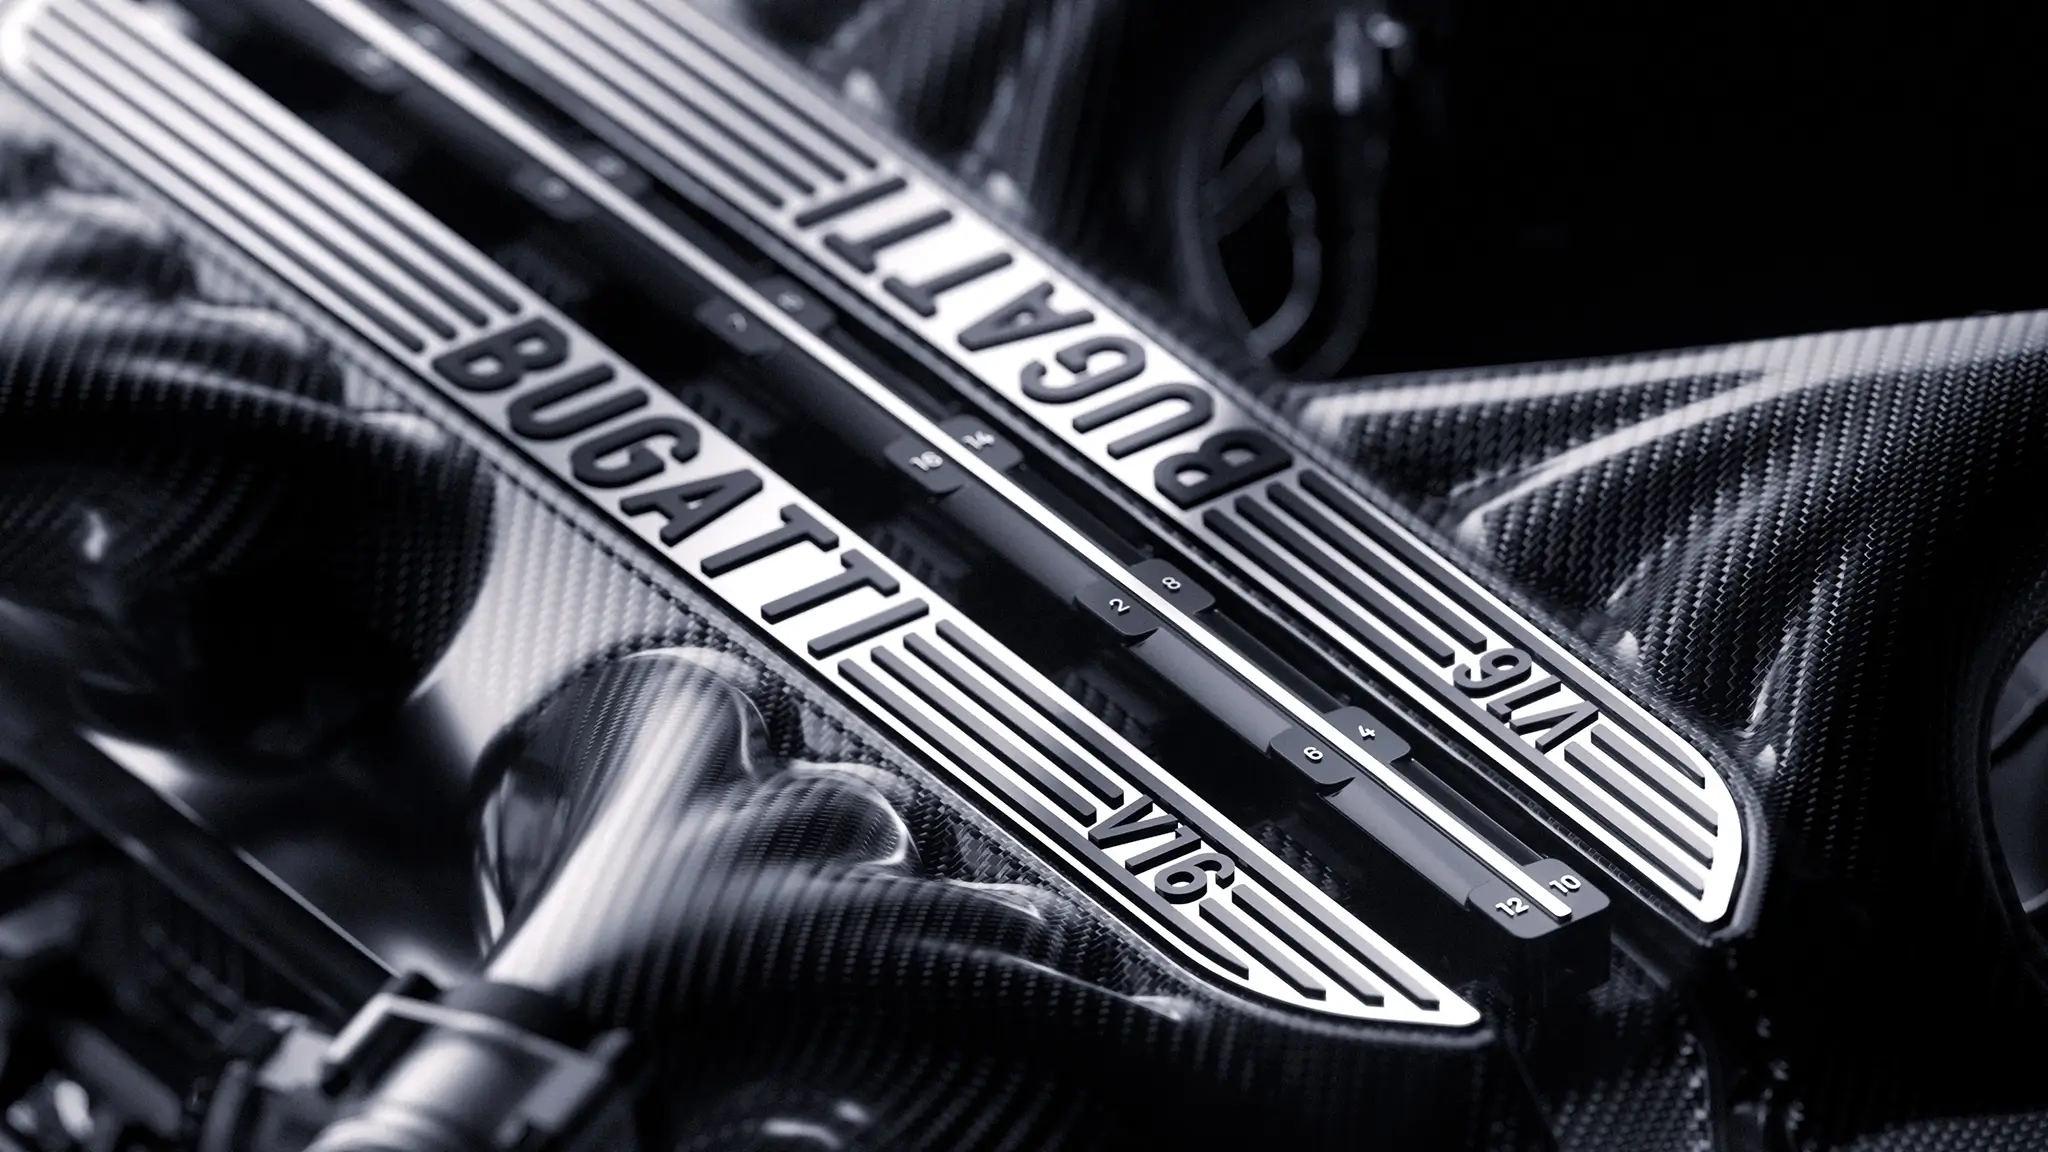 Novo motor V16 da Bugatti. Primeiros detalhes revelados